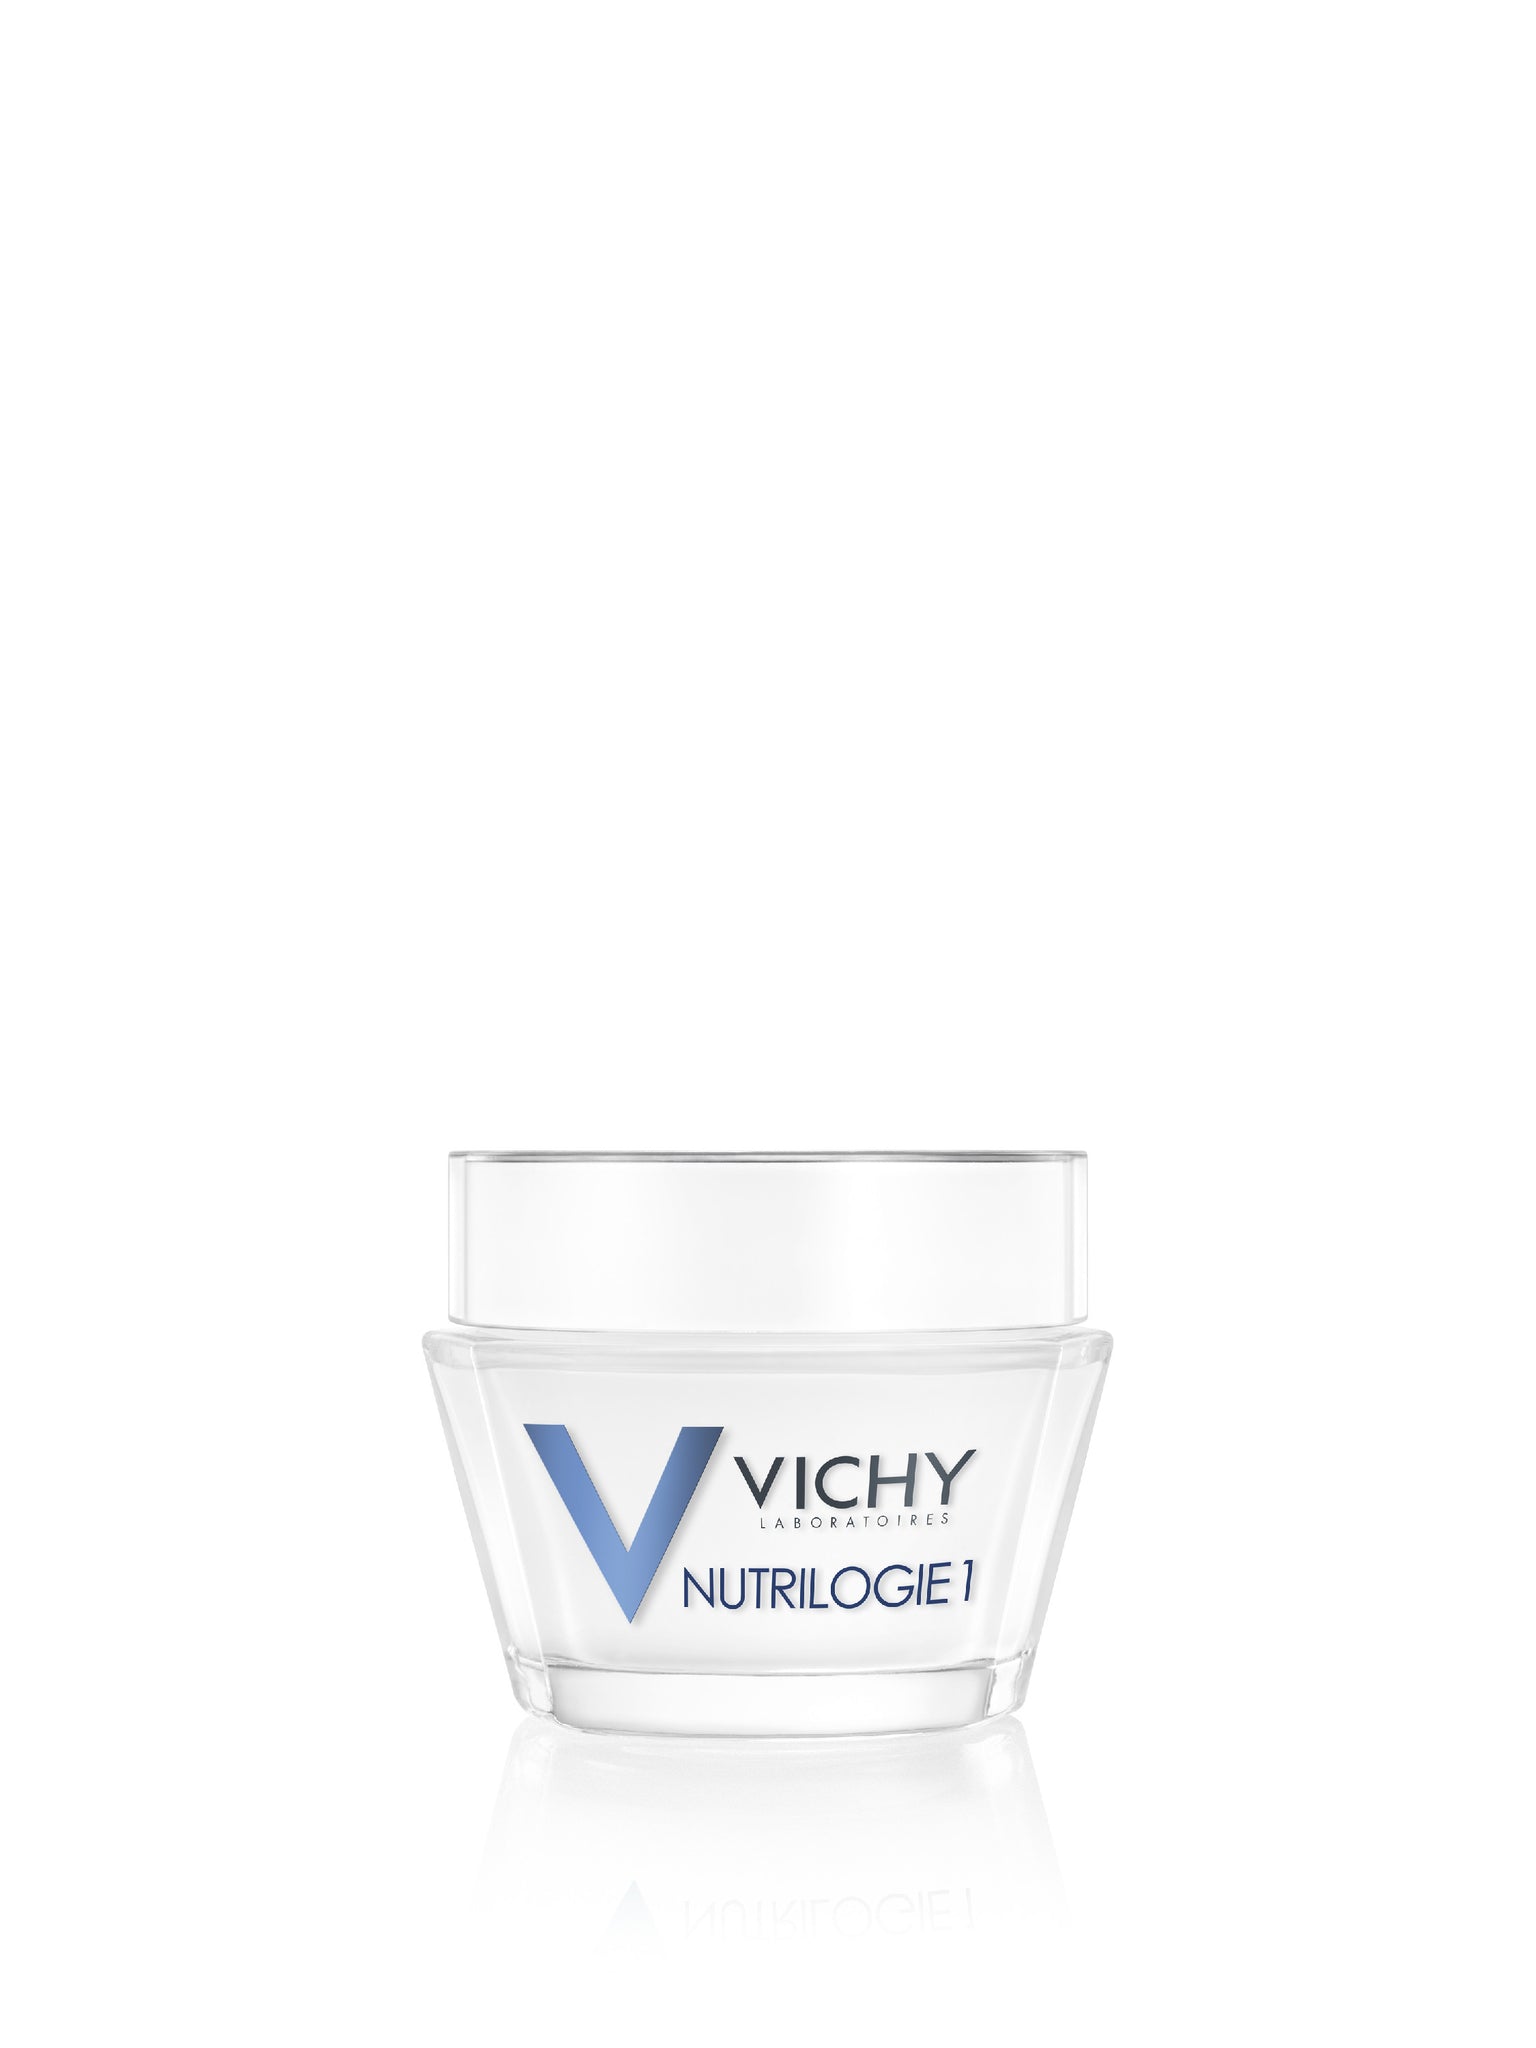 Vichy Nutrilogie 1 dagcrème 50ml voor een droge, gevoelige huid